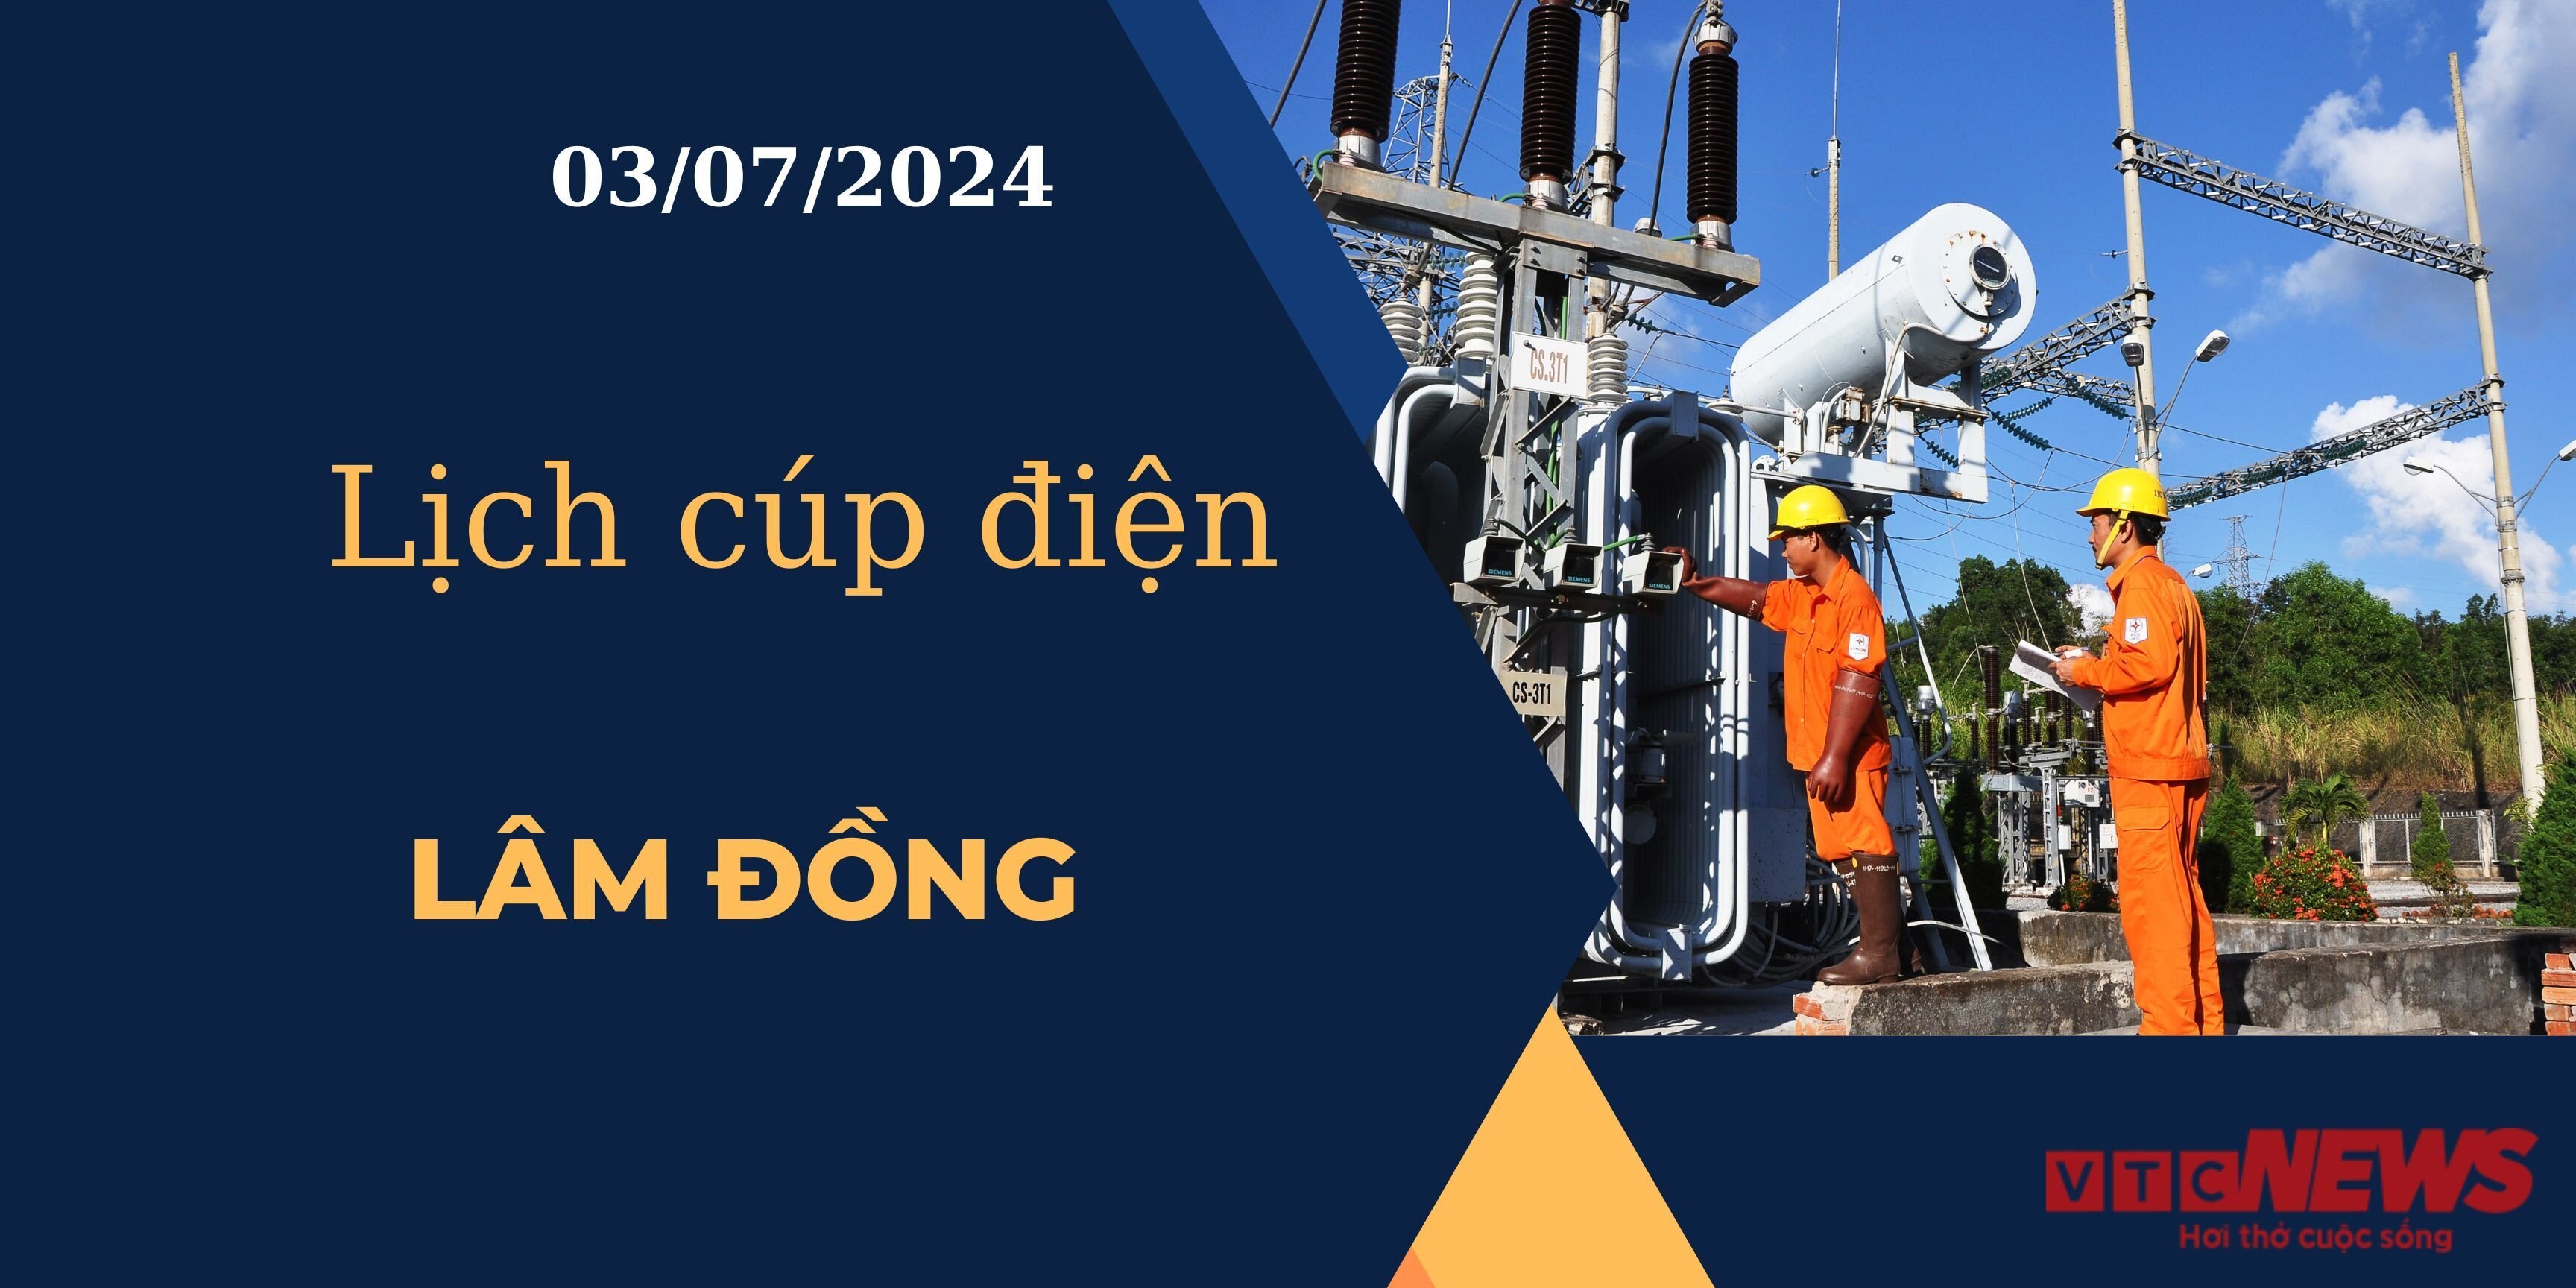 Lịch cúp điện hôm nay ngày 03/07/2024 tại Lâm Đồng